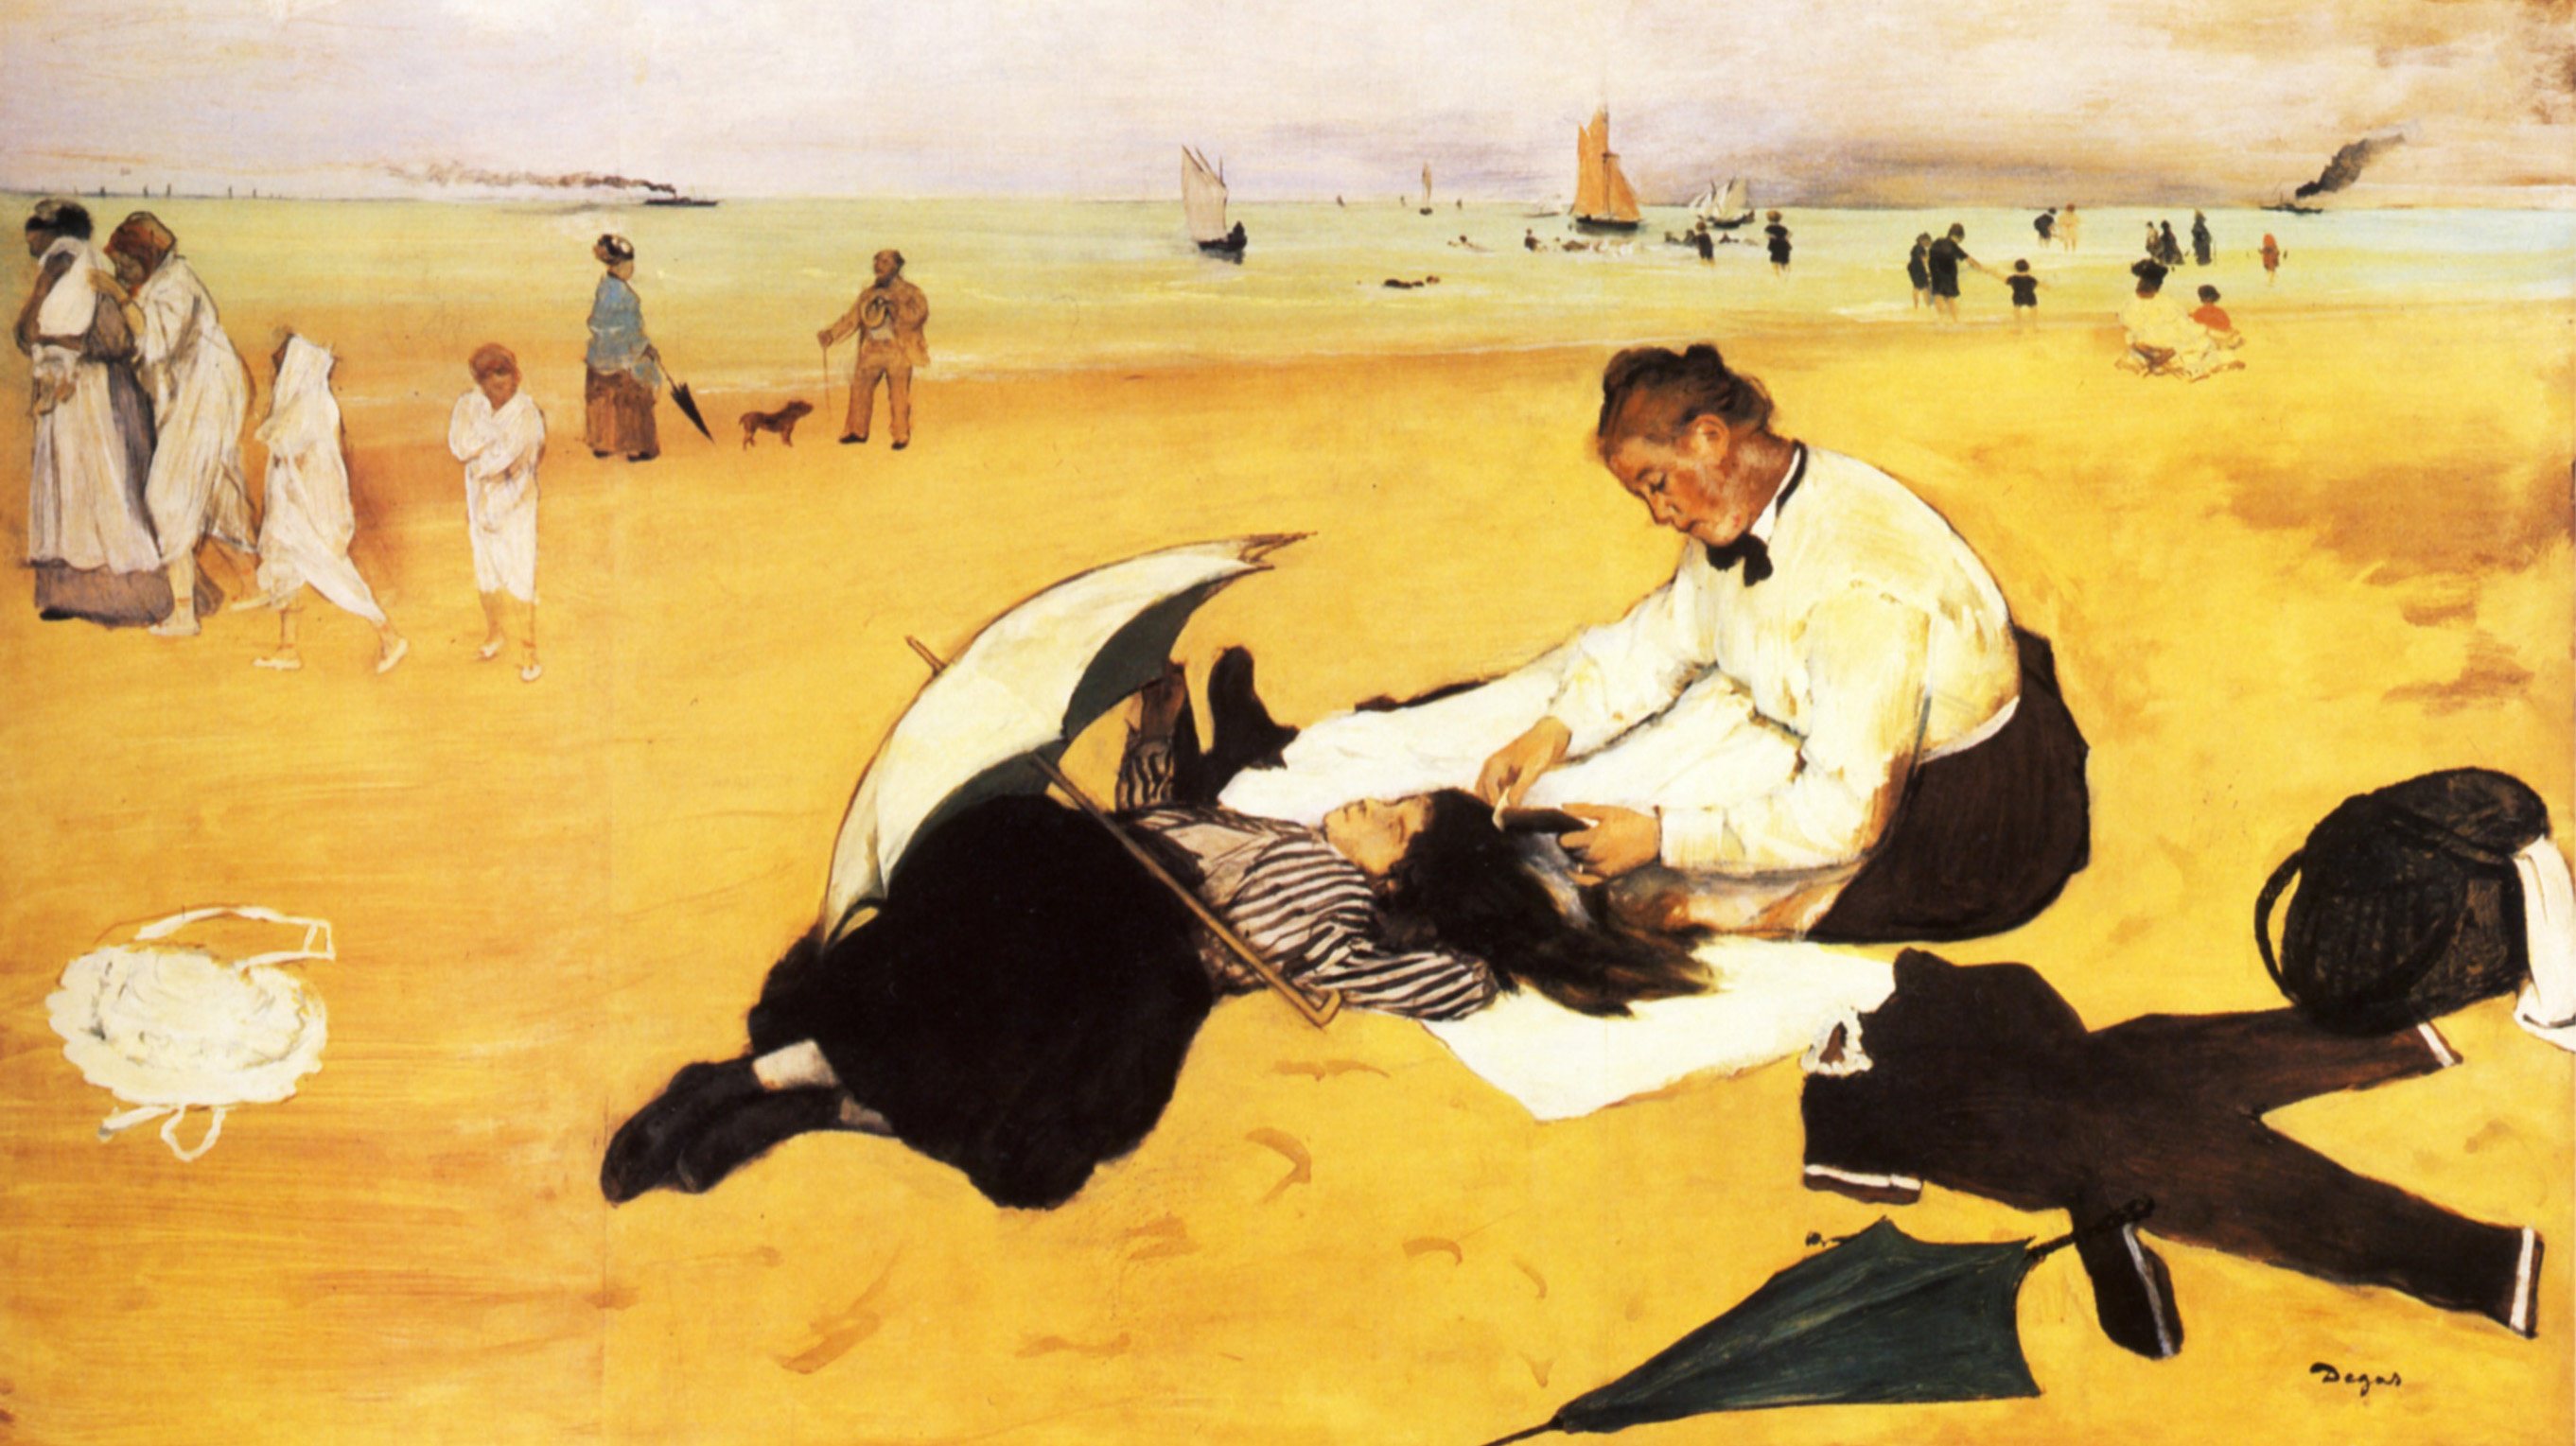 Strandszene by Edgar Degas - 1877 - 46 x 81 cm National Gallery